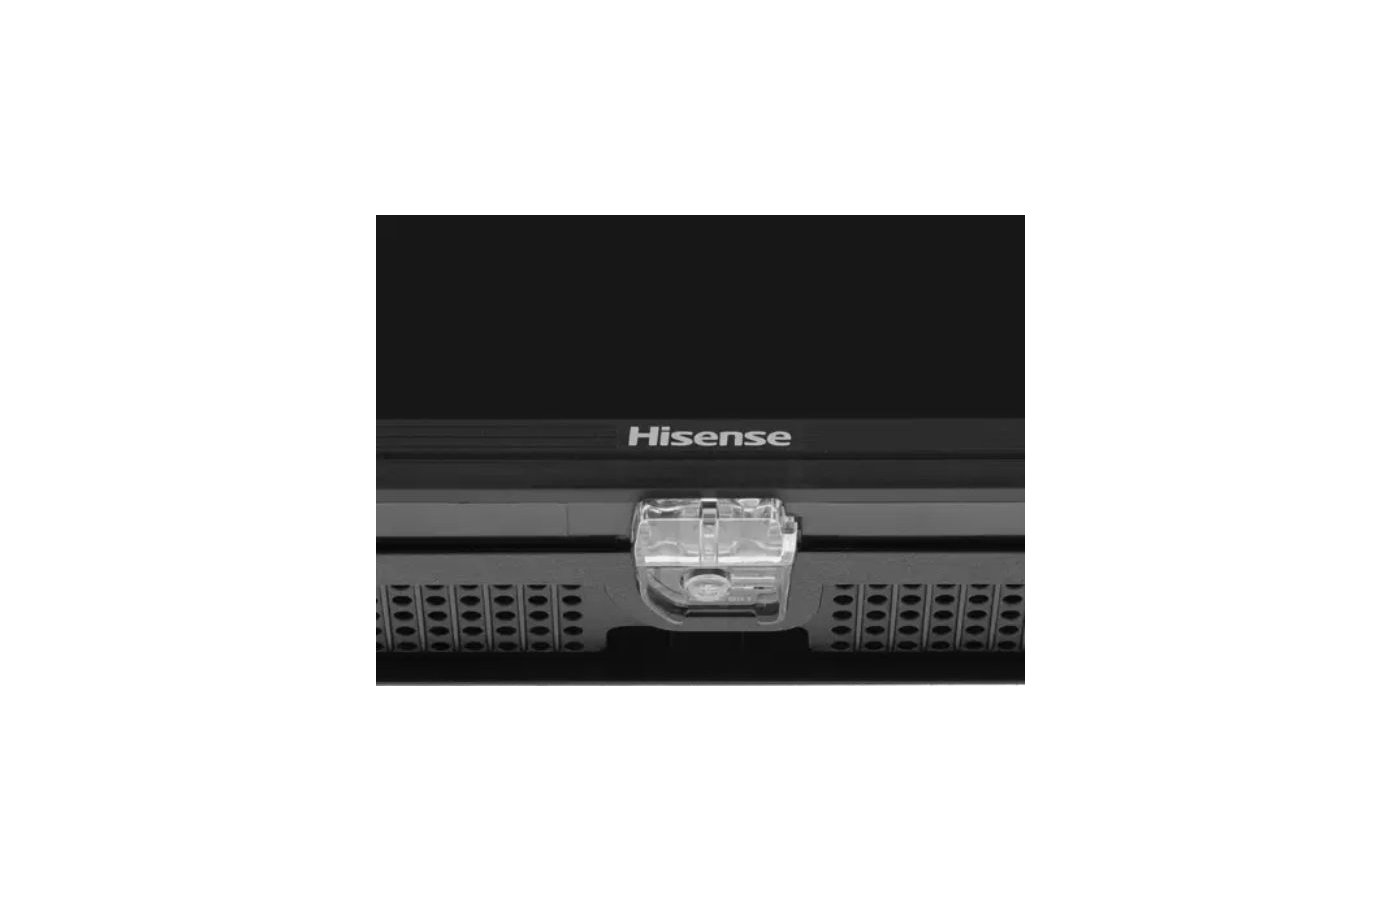 Hisense 55e7kq pro цены. Hisense 65e7hq. Smart телевизор Hisense 50a6bg имп. Hisense 43e7hq (имп).